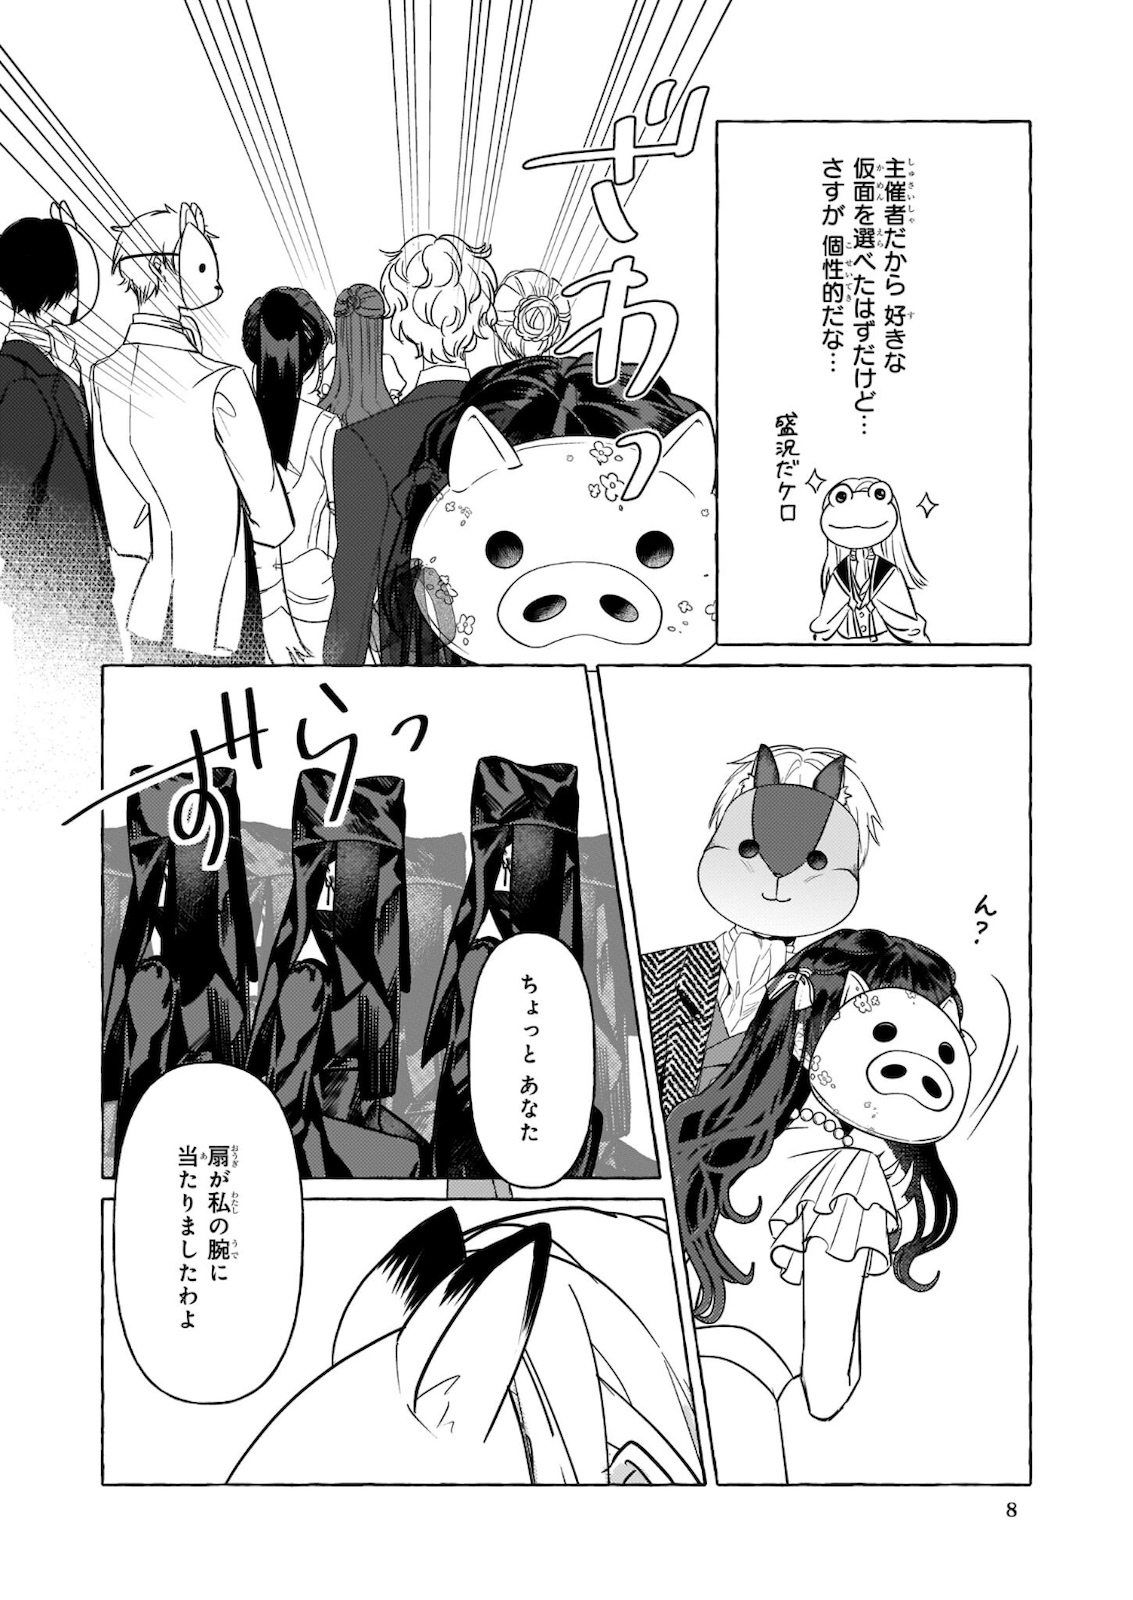 Tenseisaki ga Shoujo Manga no Shirobuta Reijou datta reBoooot! - Chapter 10.2 - Page 2